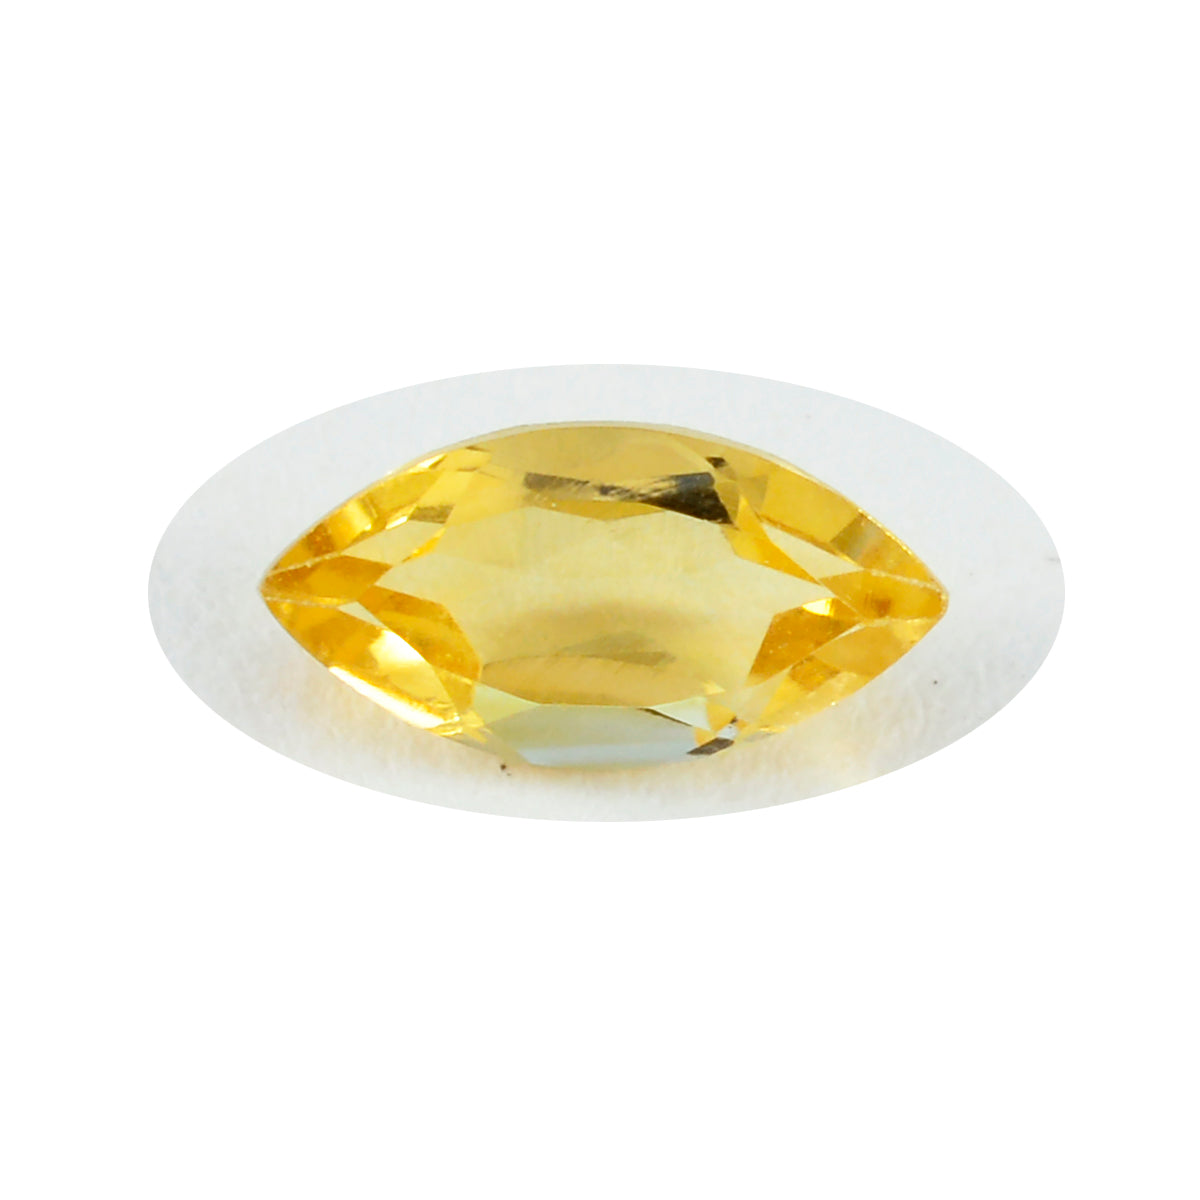 riyogems 1шт натуральный желтый цитрин ограненный 7x14 мм форма маркиза качество + камень